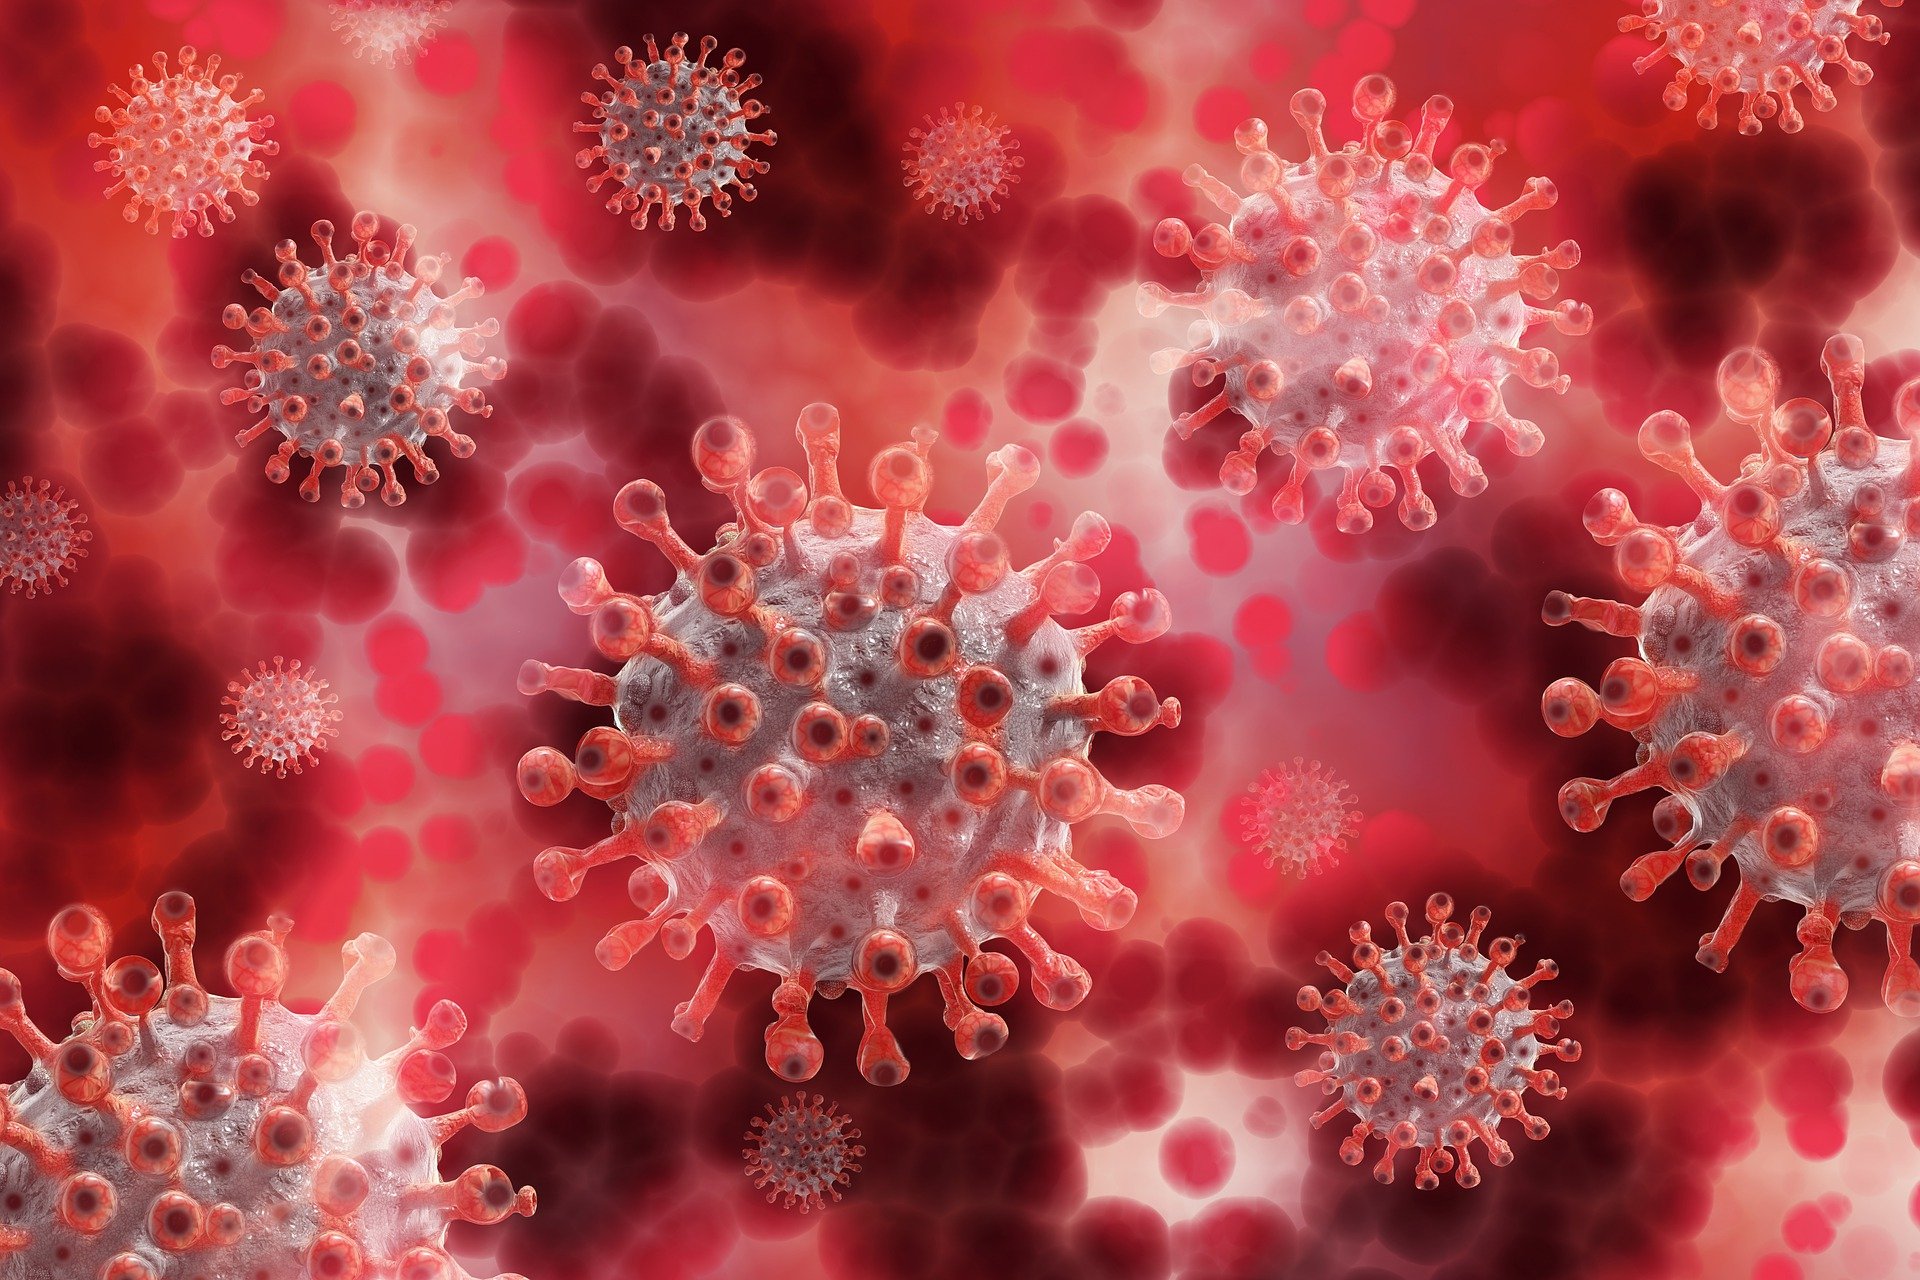 Informationen zum Coronavirus SARS-CoV-2